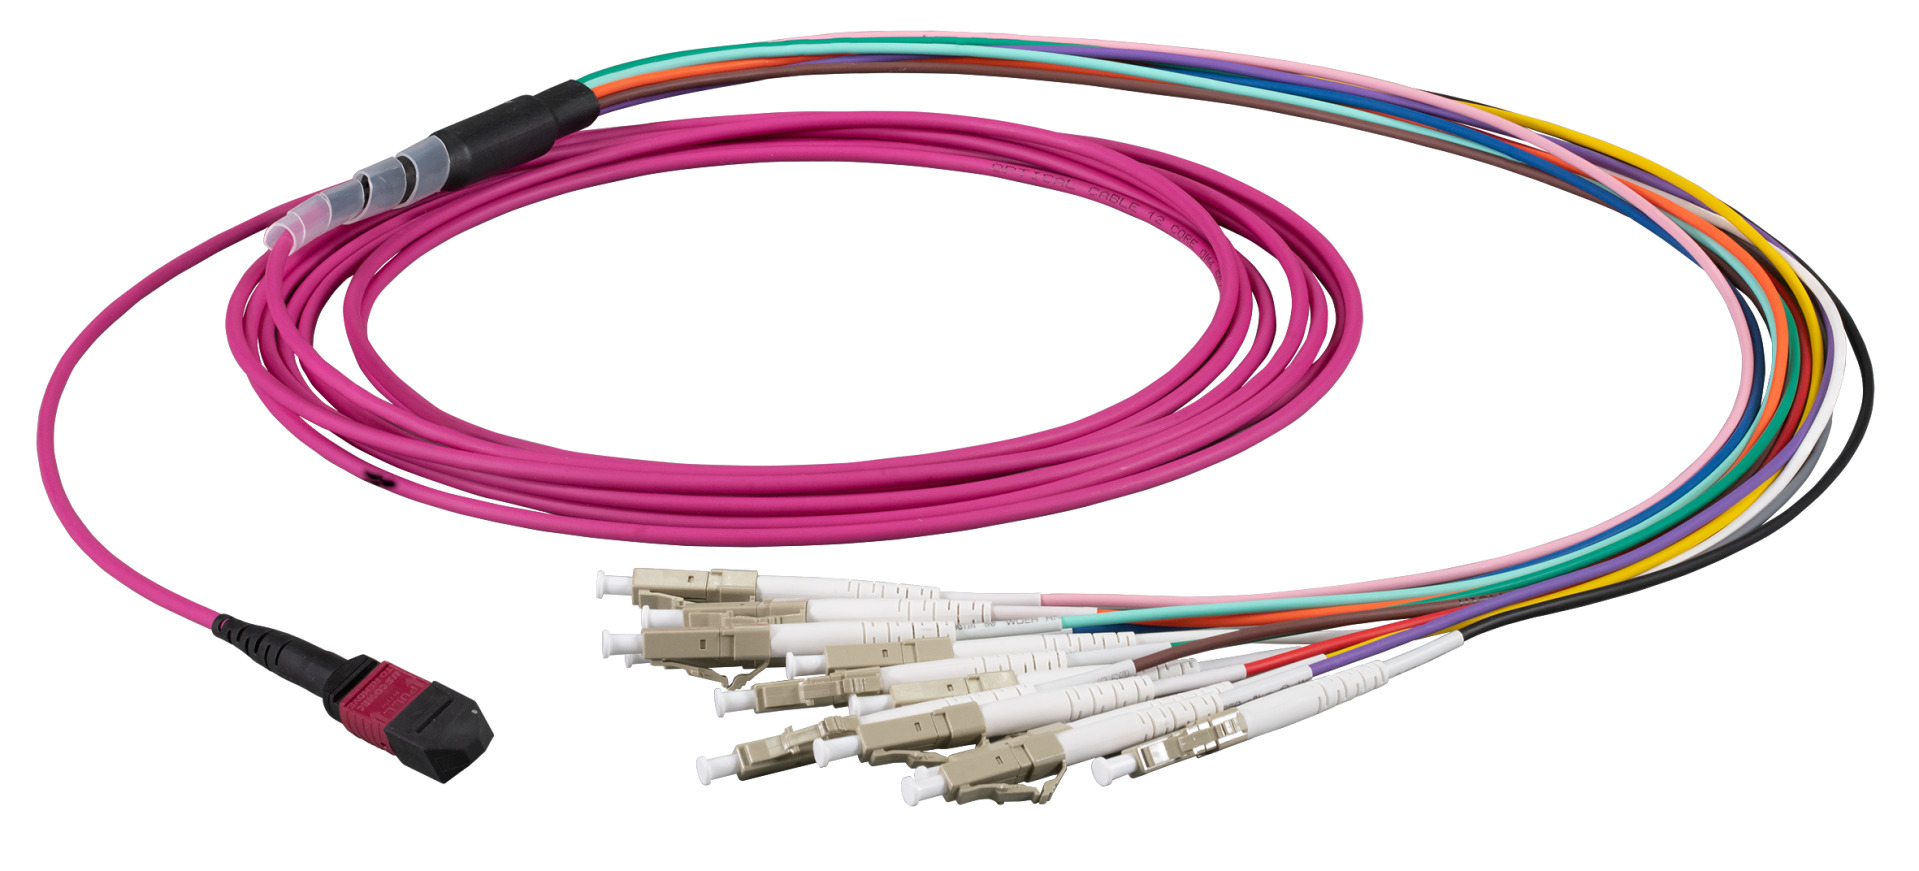 MTP®-F/LC 12-fiber patch cable OM4, LSZH erica-violet, 3m